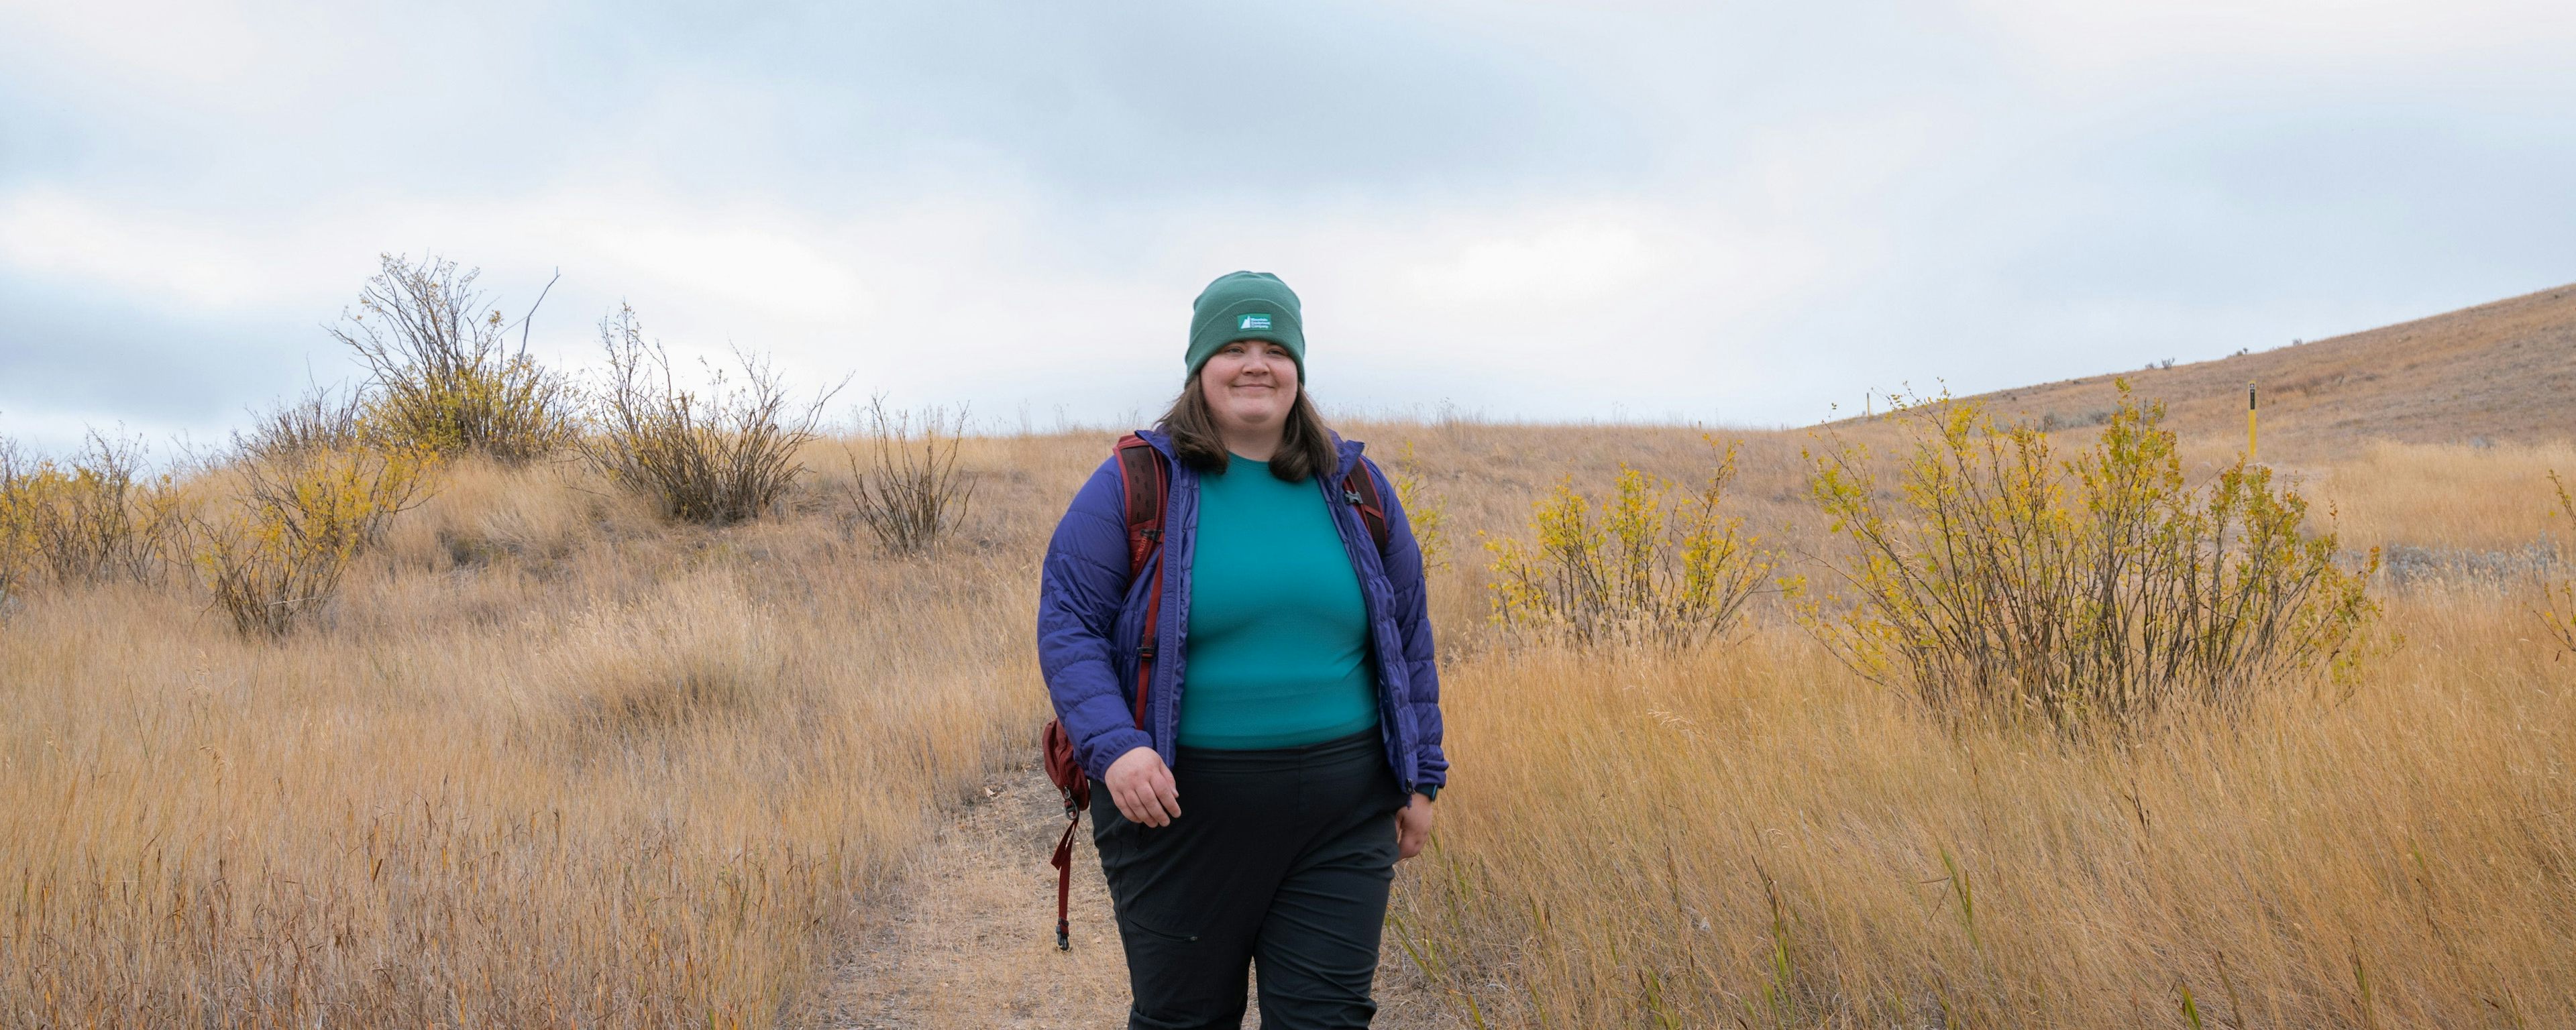 Kaila explore le Parc national des Prairies avec son pantalon Borderland de MEC, son manteau Uplink de MEC, son chandail à manches longues T0 en Vert alpin et sa tuque édition Classiques de MEC.